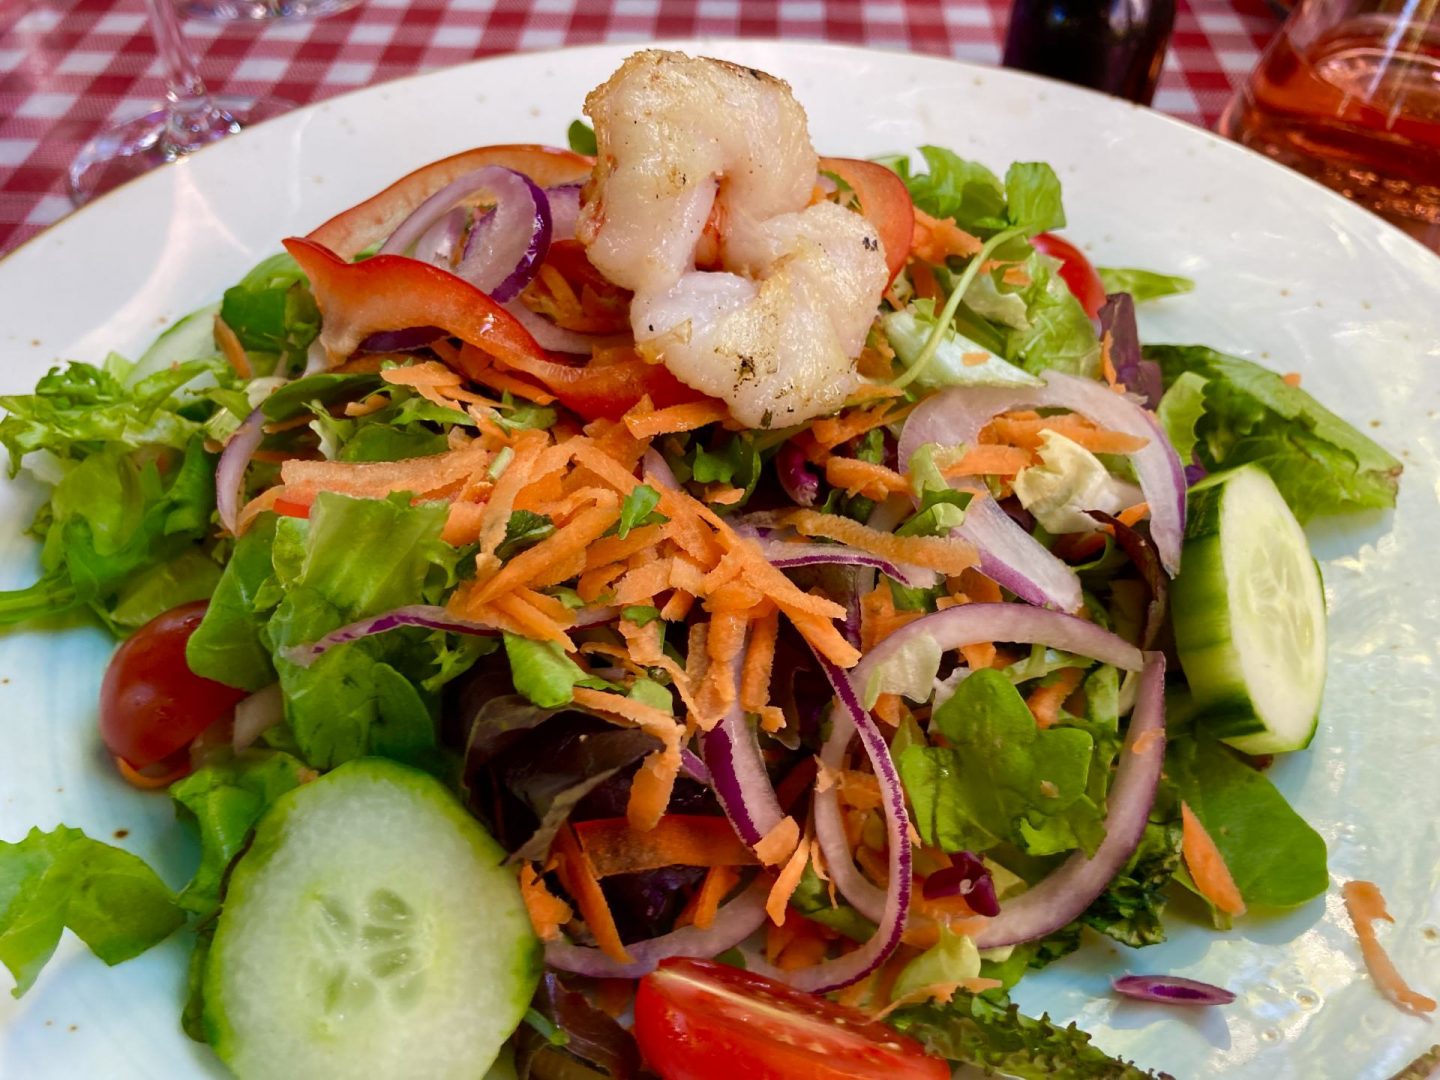 Erfahrung Bewertung Kritik Trattoria Puglia Castrop-Rauxel Salat mit Garnele Foodblog Sternestulle